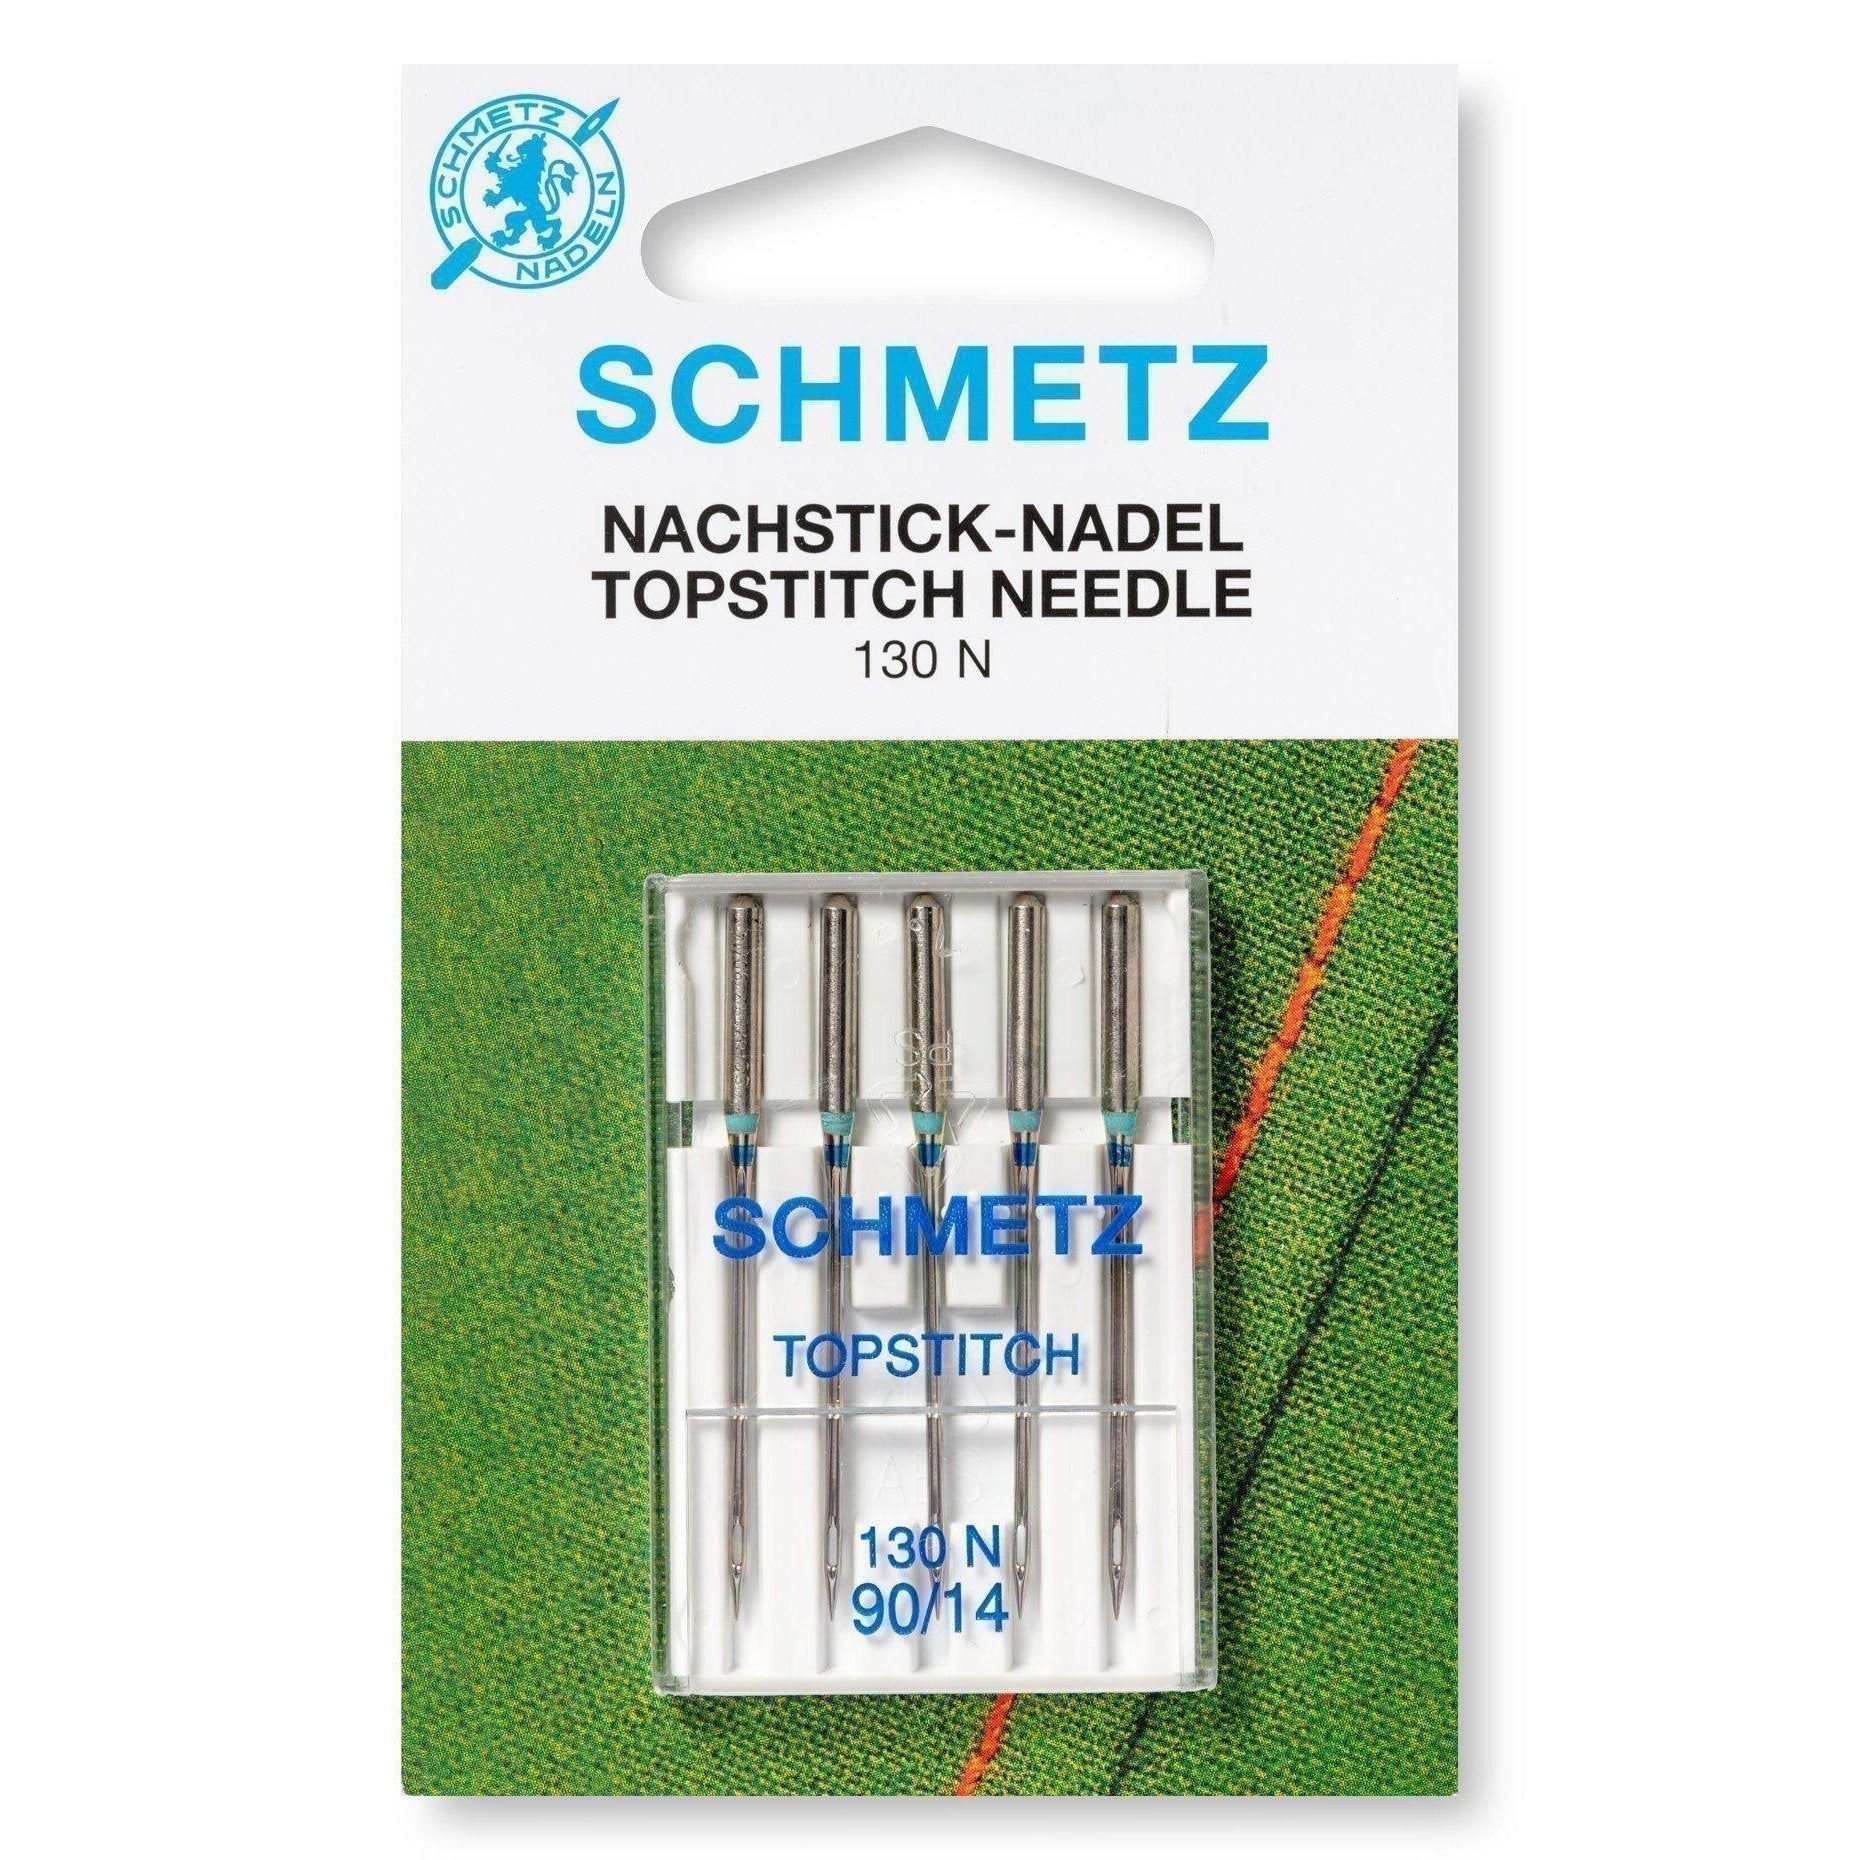 Schmetz-Topstitch Needles 100/16-sewing notion-gather here online